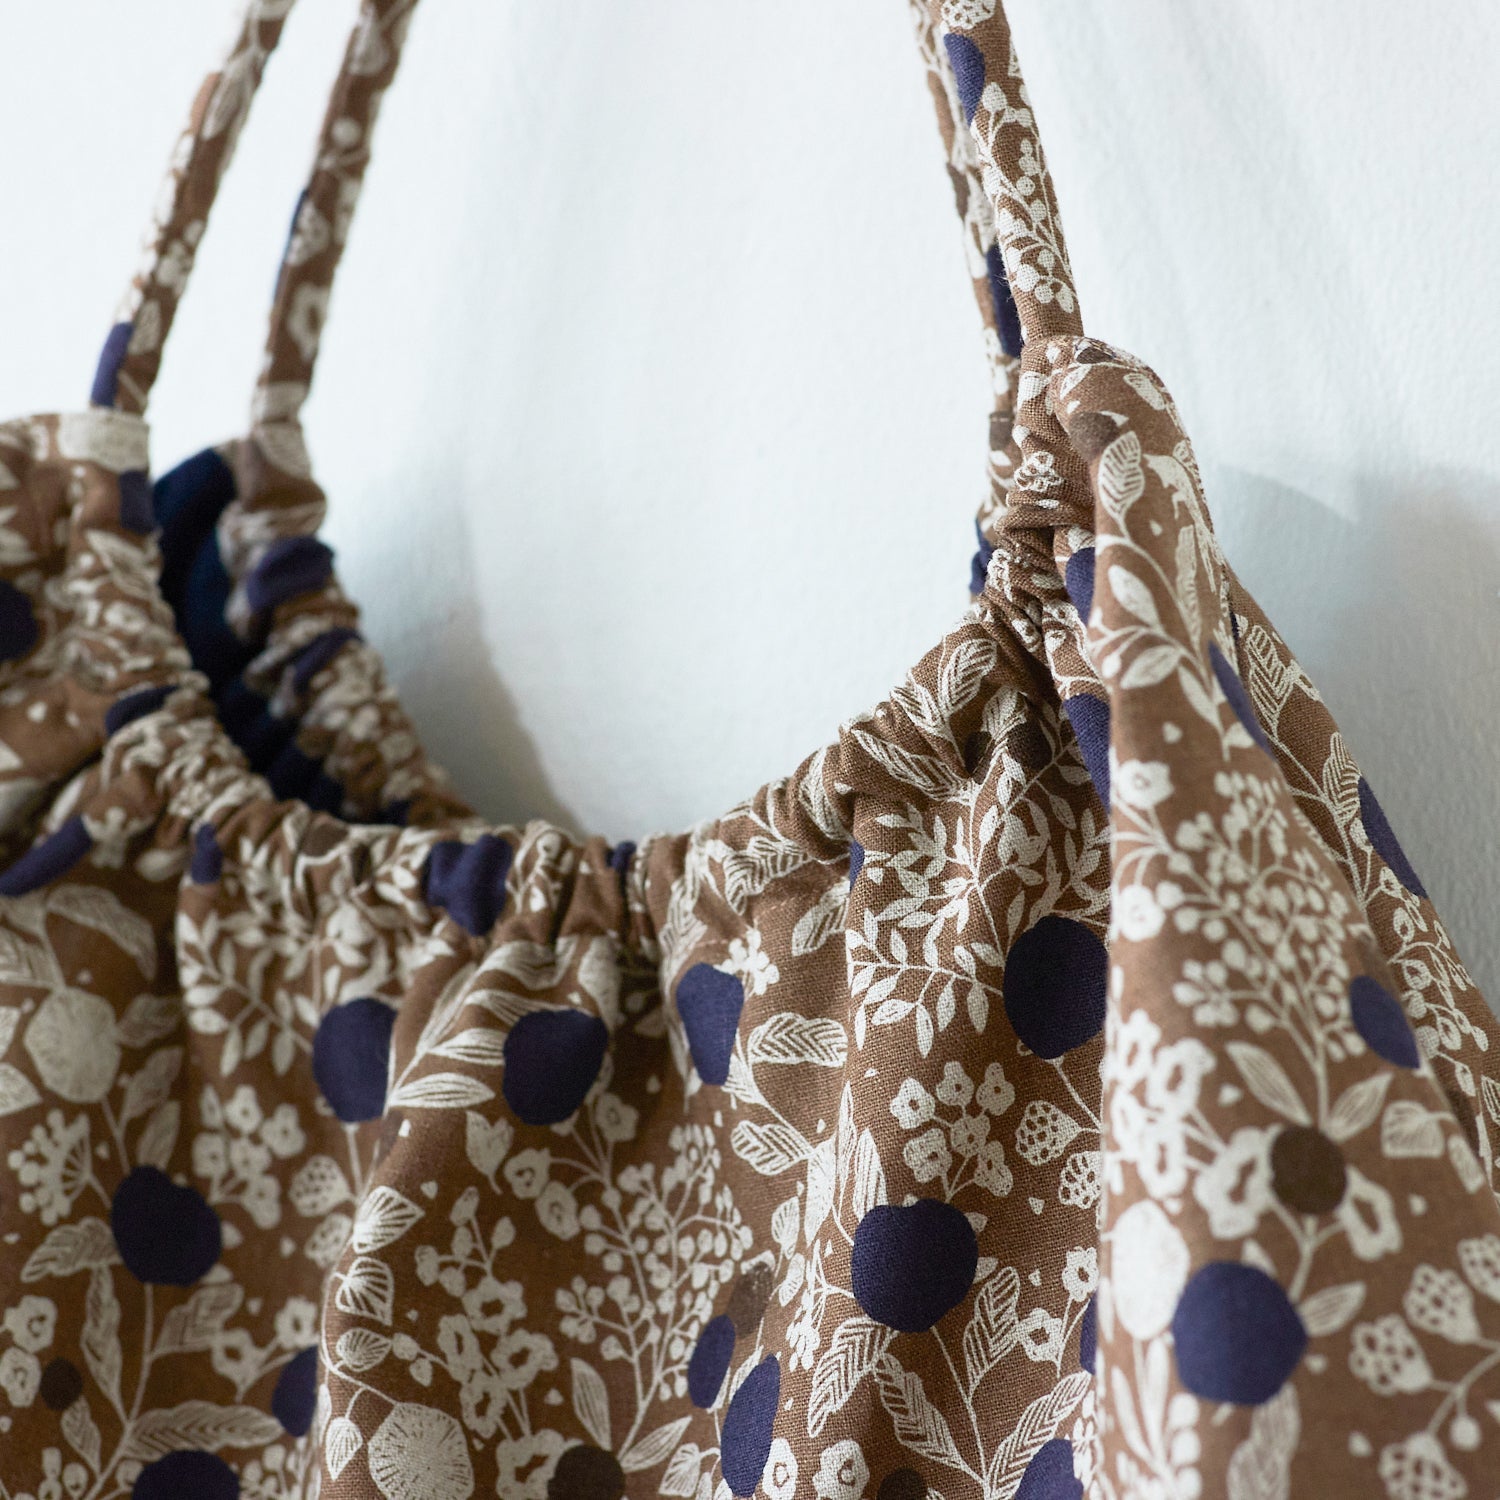 echino Sewing Pattern Series - Round Shoulder Tote Bag